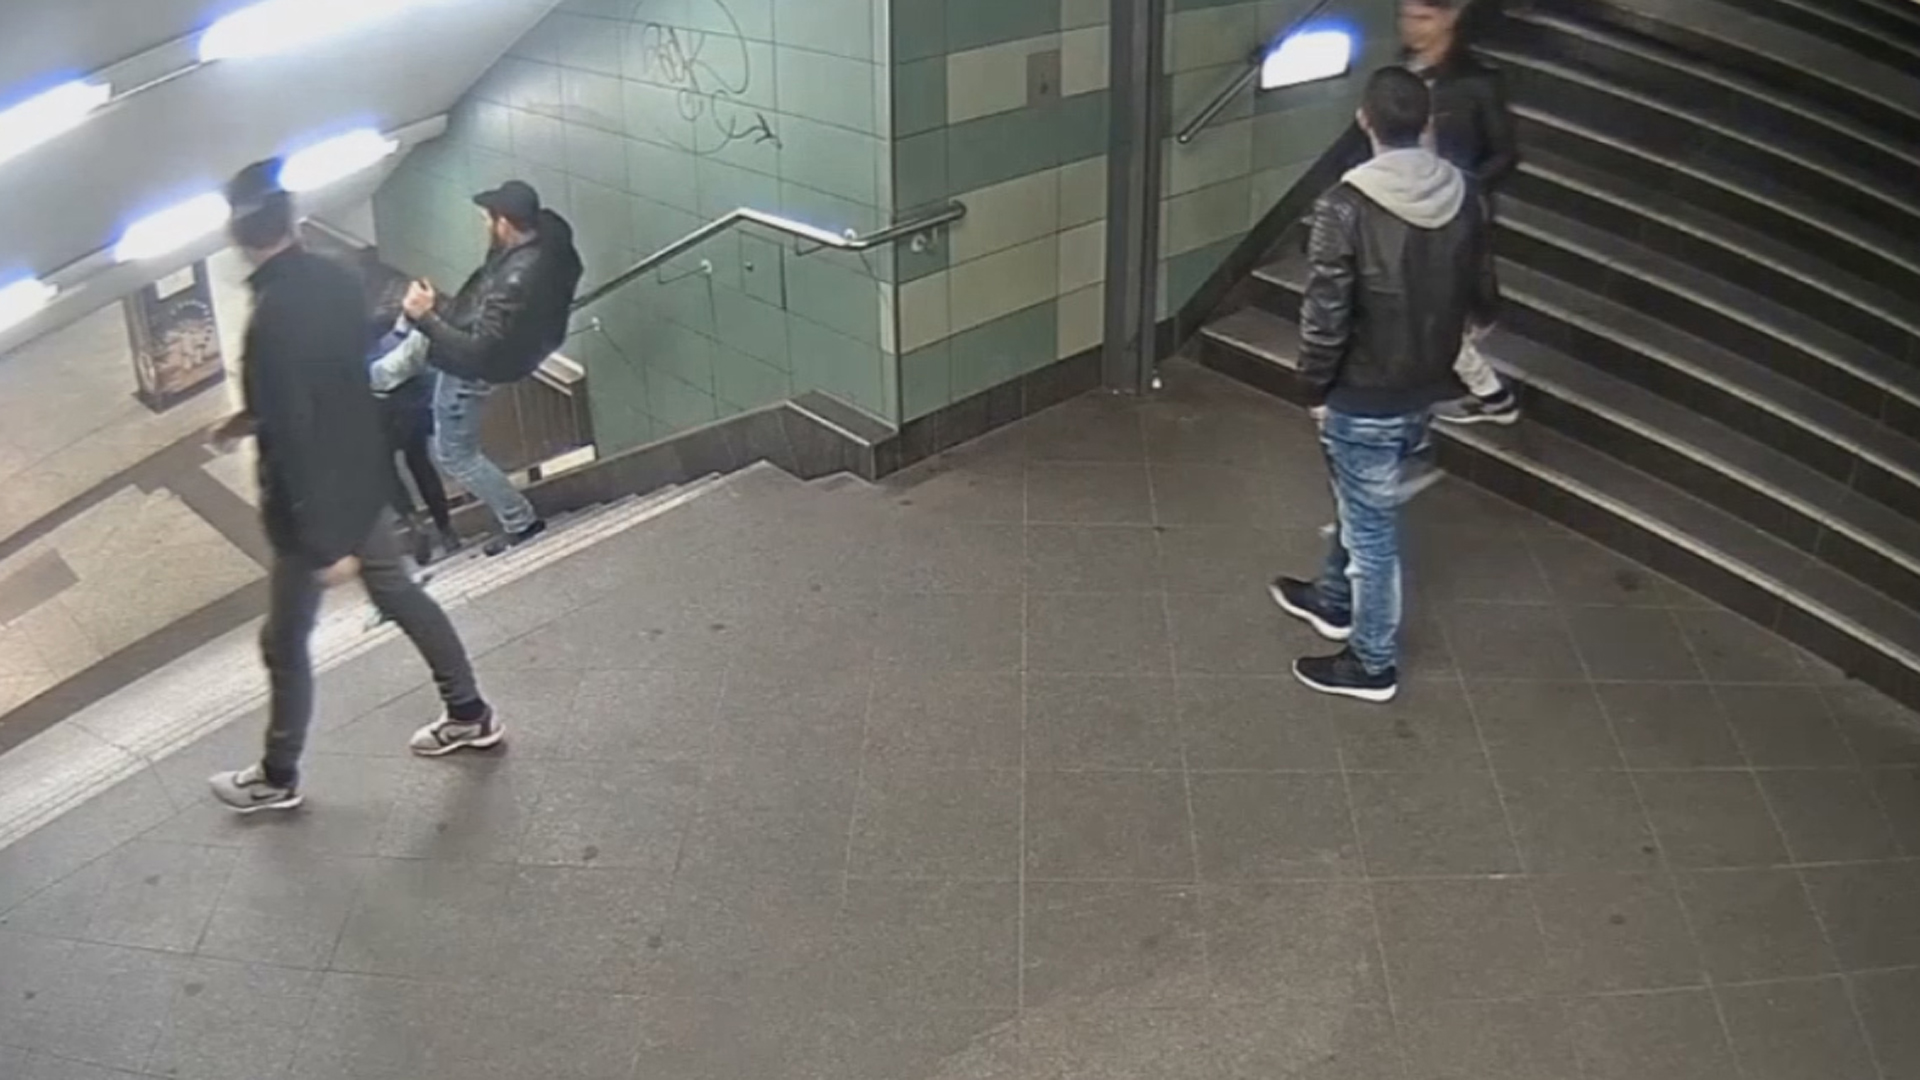 Das Foto aus einer Videosequenz, mit dem die Berliner Polizei um Mithilfe bei der Identifizierung mehrerer Männer bittet, zeigt den brutalen Angriff auf eine junge Frau in einem U-Bahnhof.  | Bildquelle: picture alliance / Polizei Berli